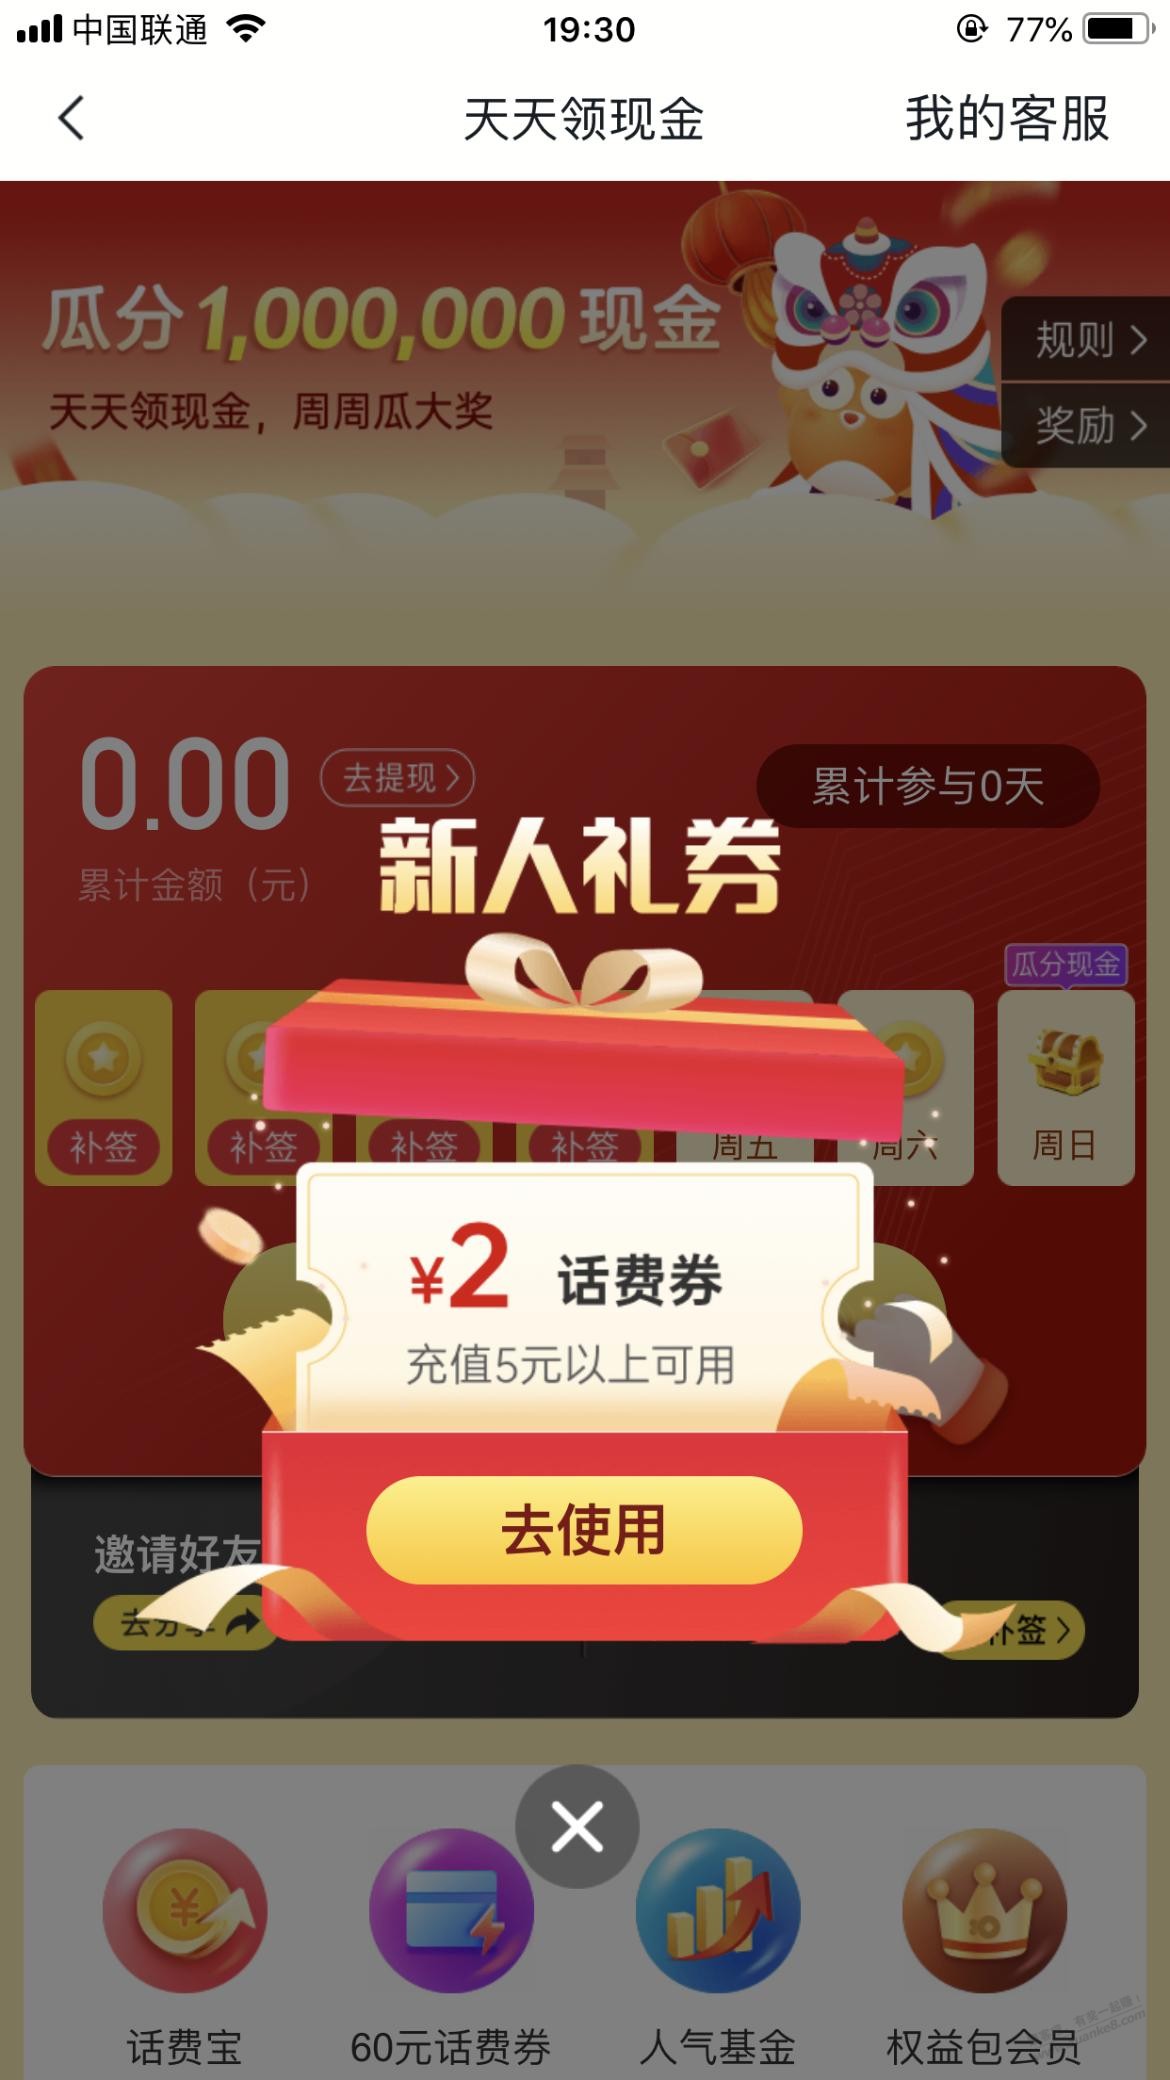 沃钱包app5-2话费券-惠小助(52huixz.com)